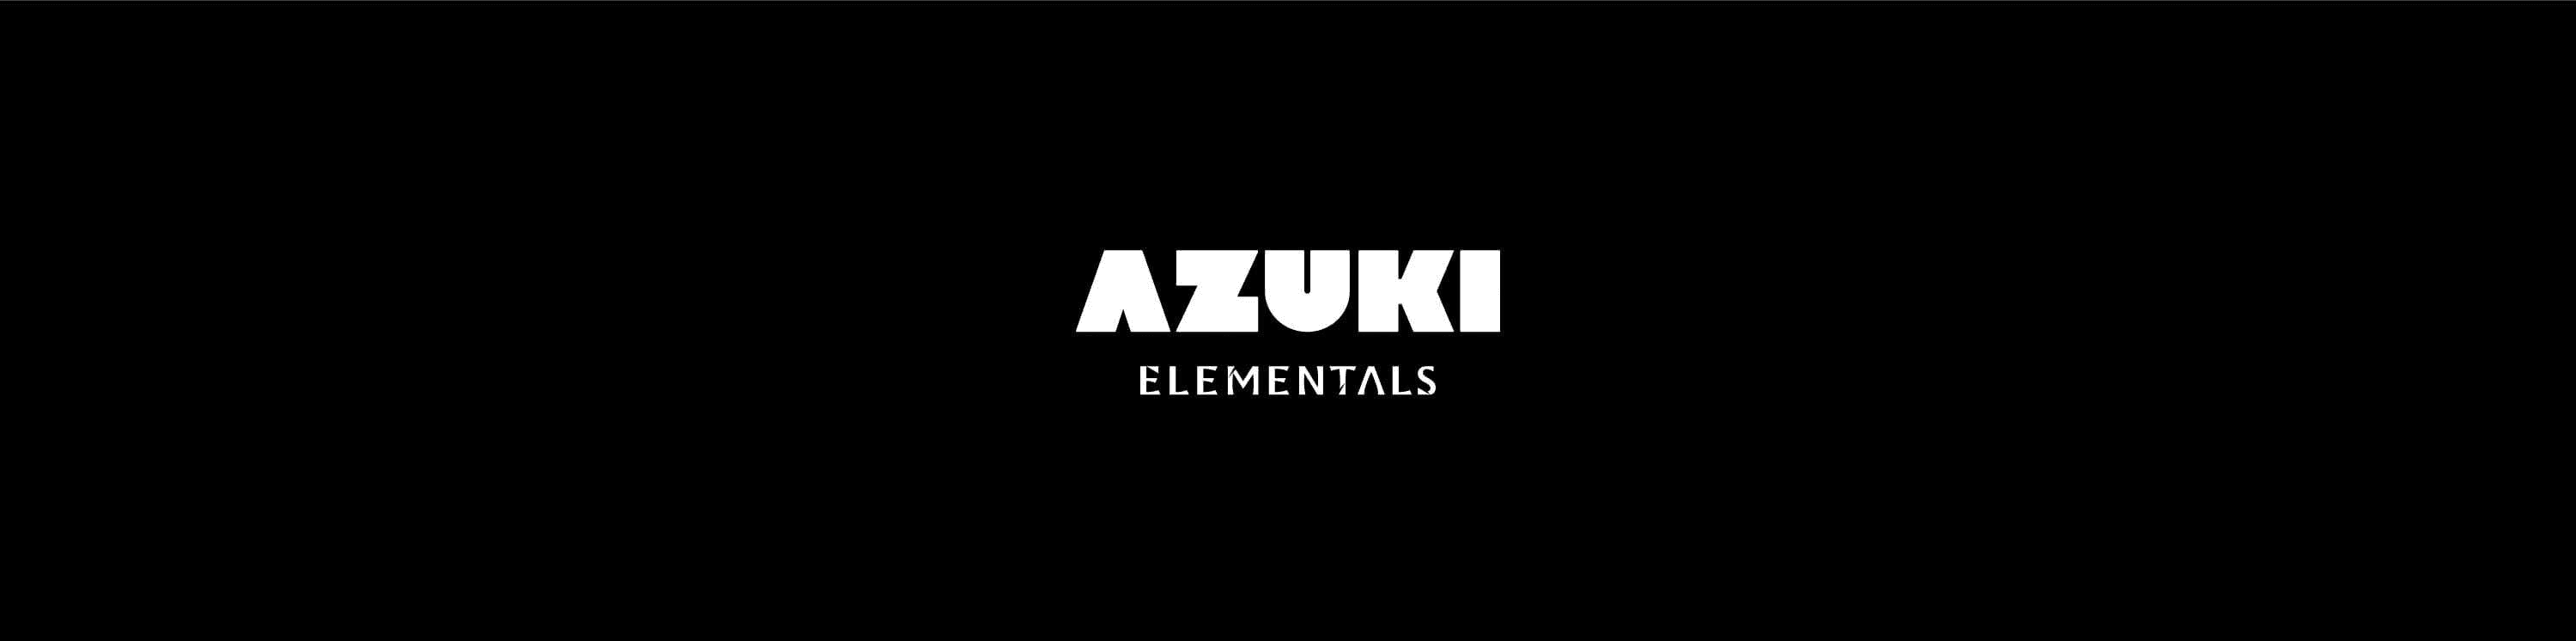 Azuki Elementals Chip